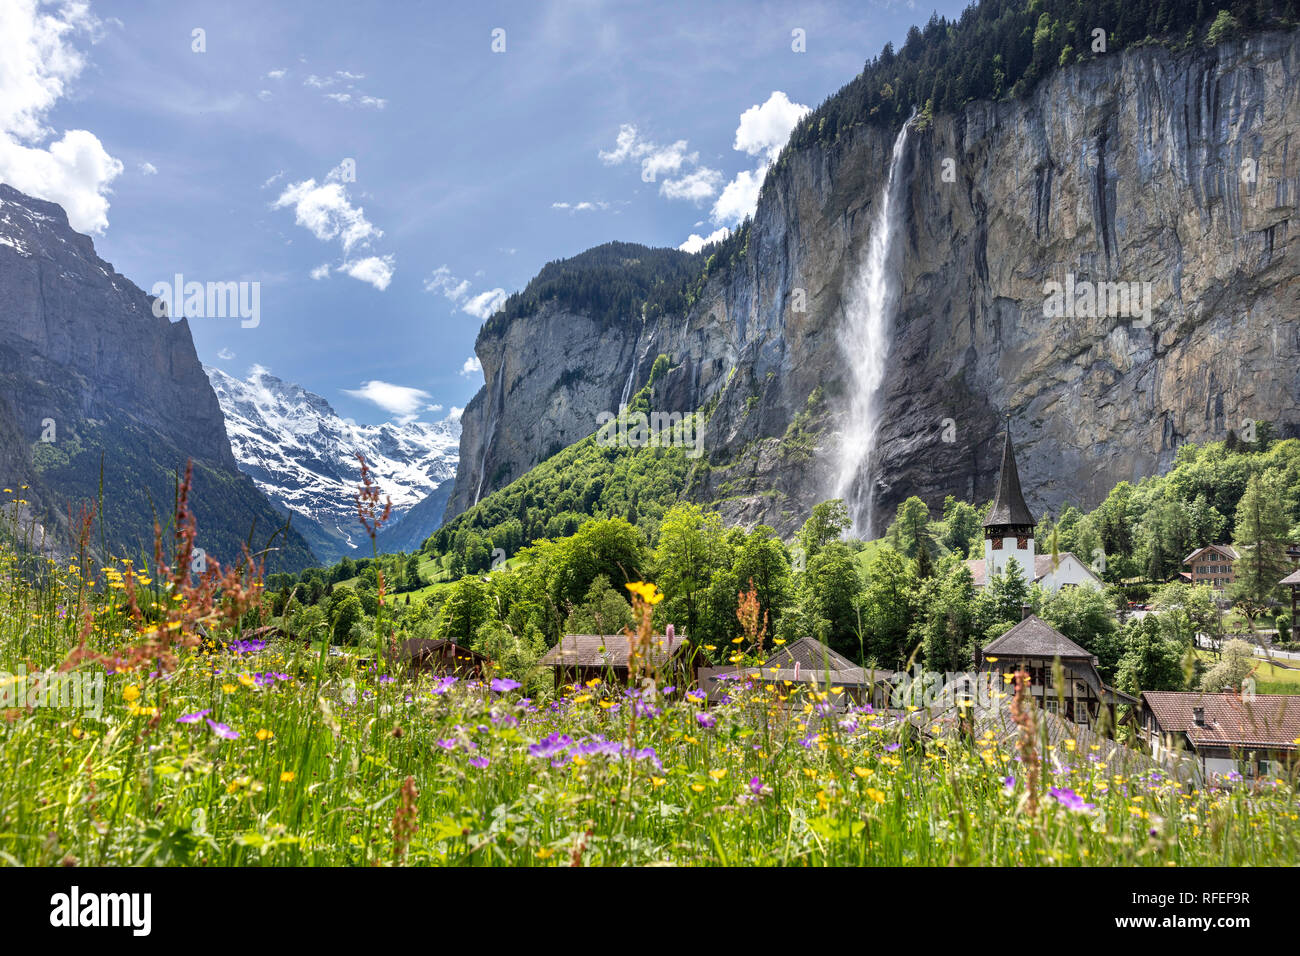 La Suisse, les Alpes, Berner Oberland, au printemps. Lauterbrunnen, vue sur le village et la cascade Staubbach de 300 mètres de haut. Weisse Lutschine valley. Banque D'Images